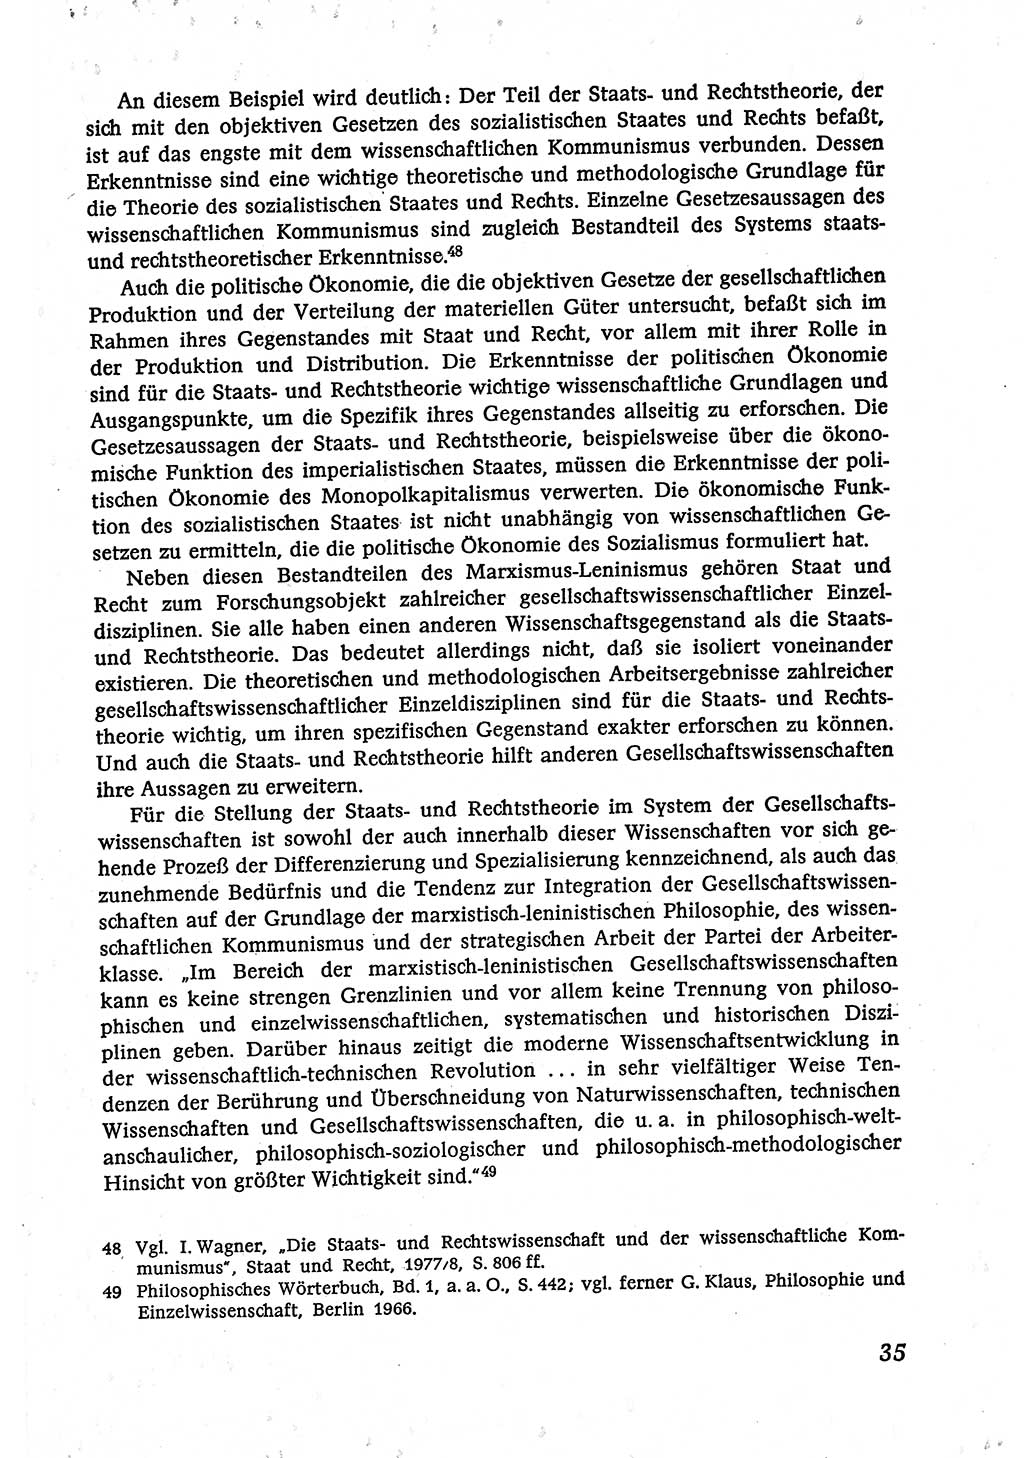 Marxistisch-leninistische (ML) Staats- und Rechtstheorie [Deutsche Demokratische Republik (DDR)], Lehrbuch 1980, Seite 35 (ML St.-R.-Th. DDR Lb. 1980, S. 35)